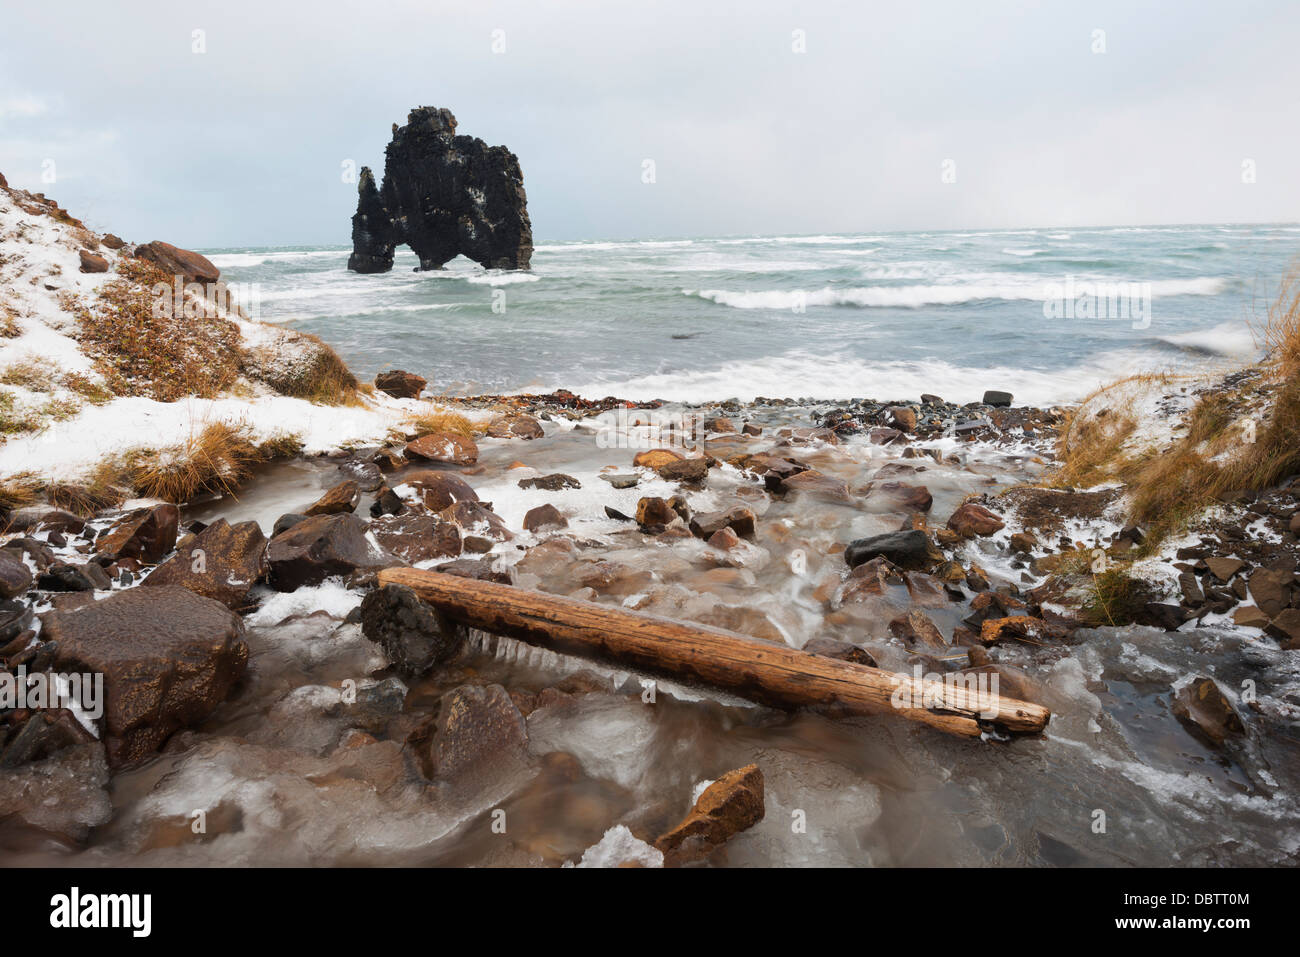 Hvitserkur rock formation, Vatnsnes peninsular, Iceland, Polar Regions Stock Photo